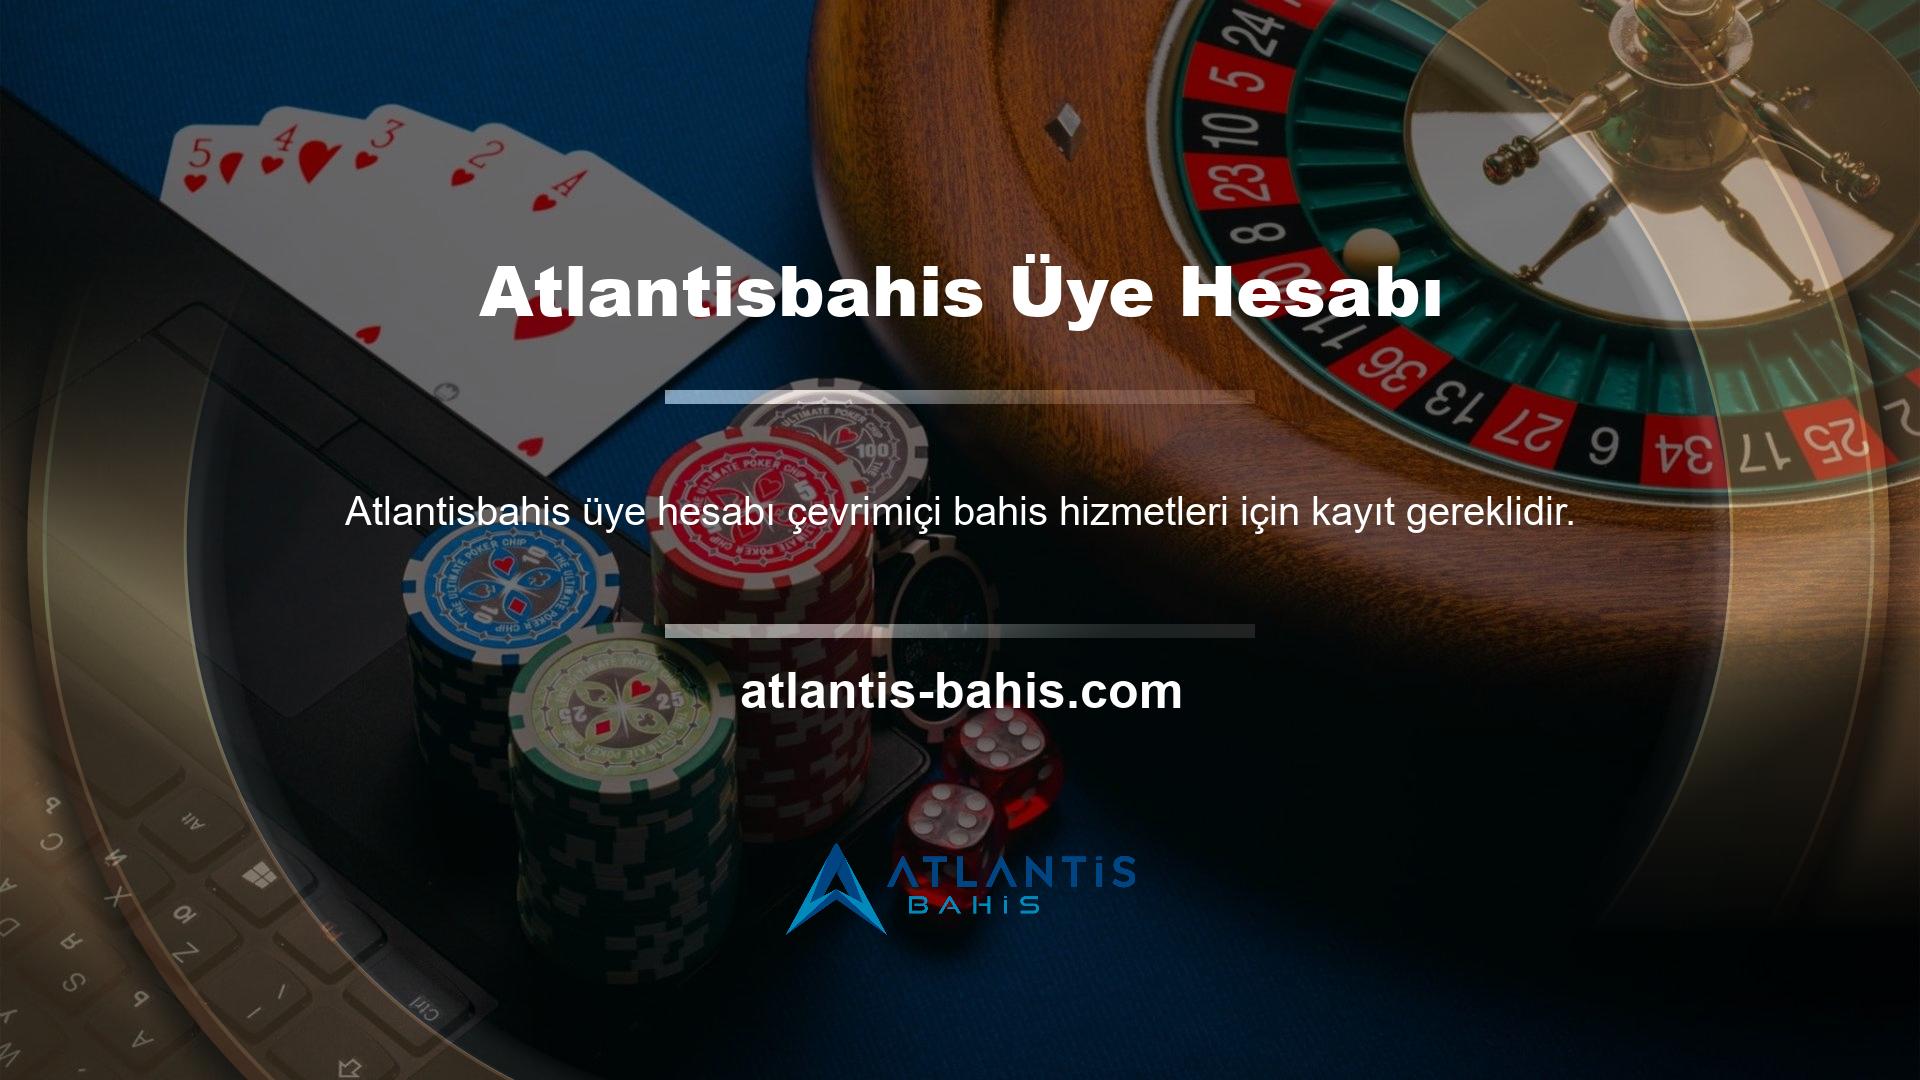 Atlantisbahis web sitesini ziyaret ederek üye olmayı tercih edenler, istedikleri üyelik hesabını oluşturmak için online üyelik formunu doldurabilirler